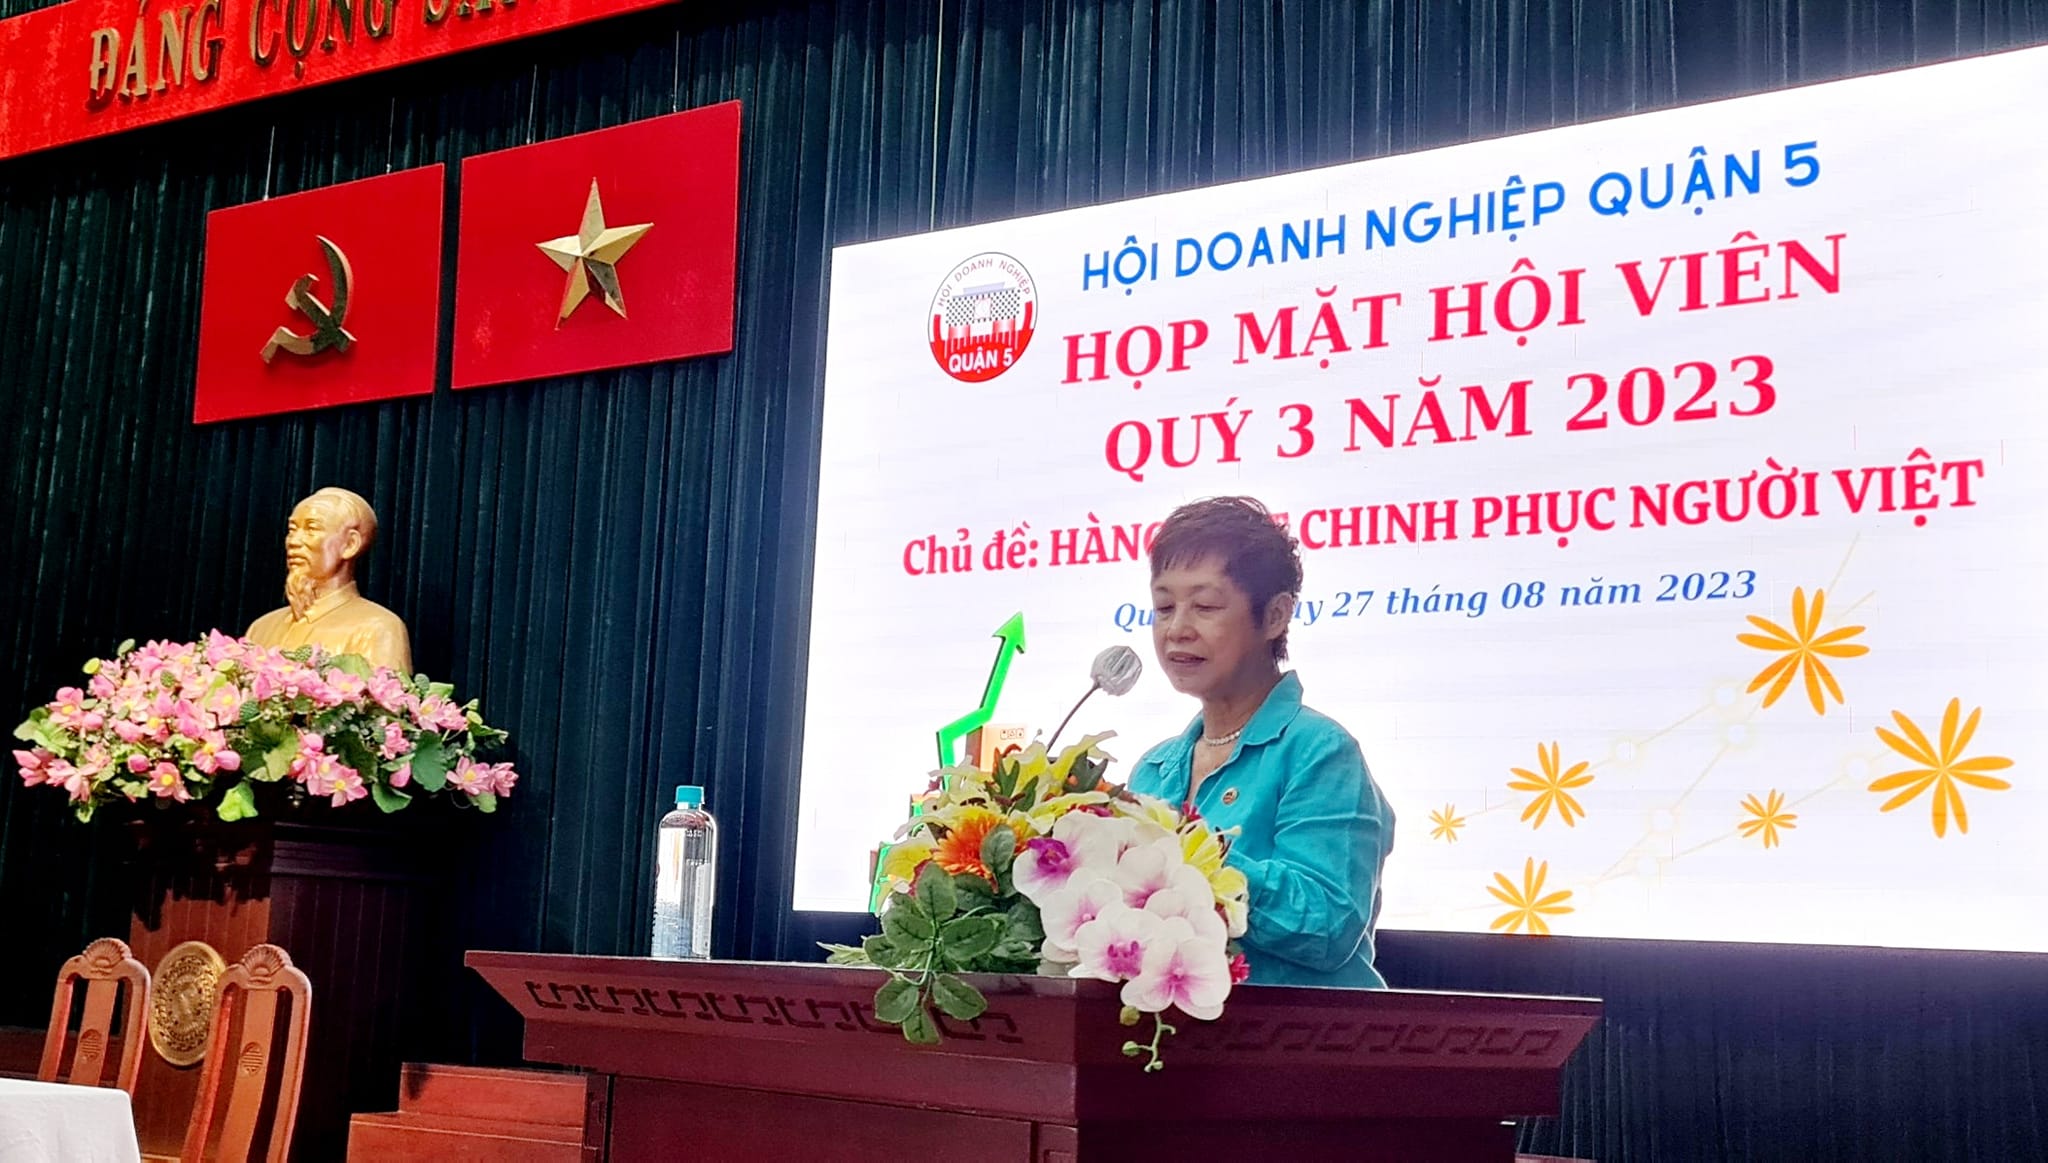 Chương trình Họp mặt hội viên quý 3 năm 2023 với chủ đề “Hàng Việt chinh phục người Việt”